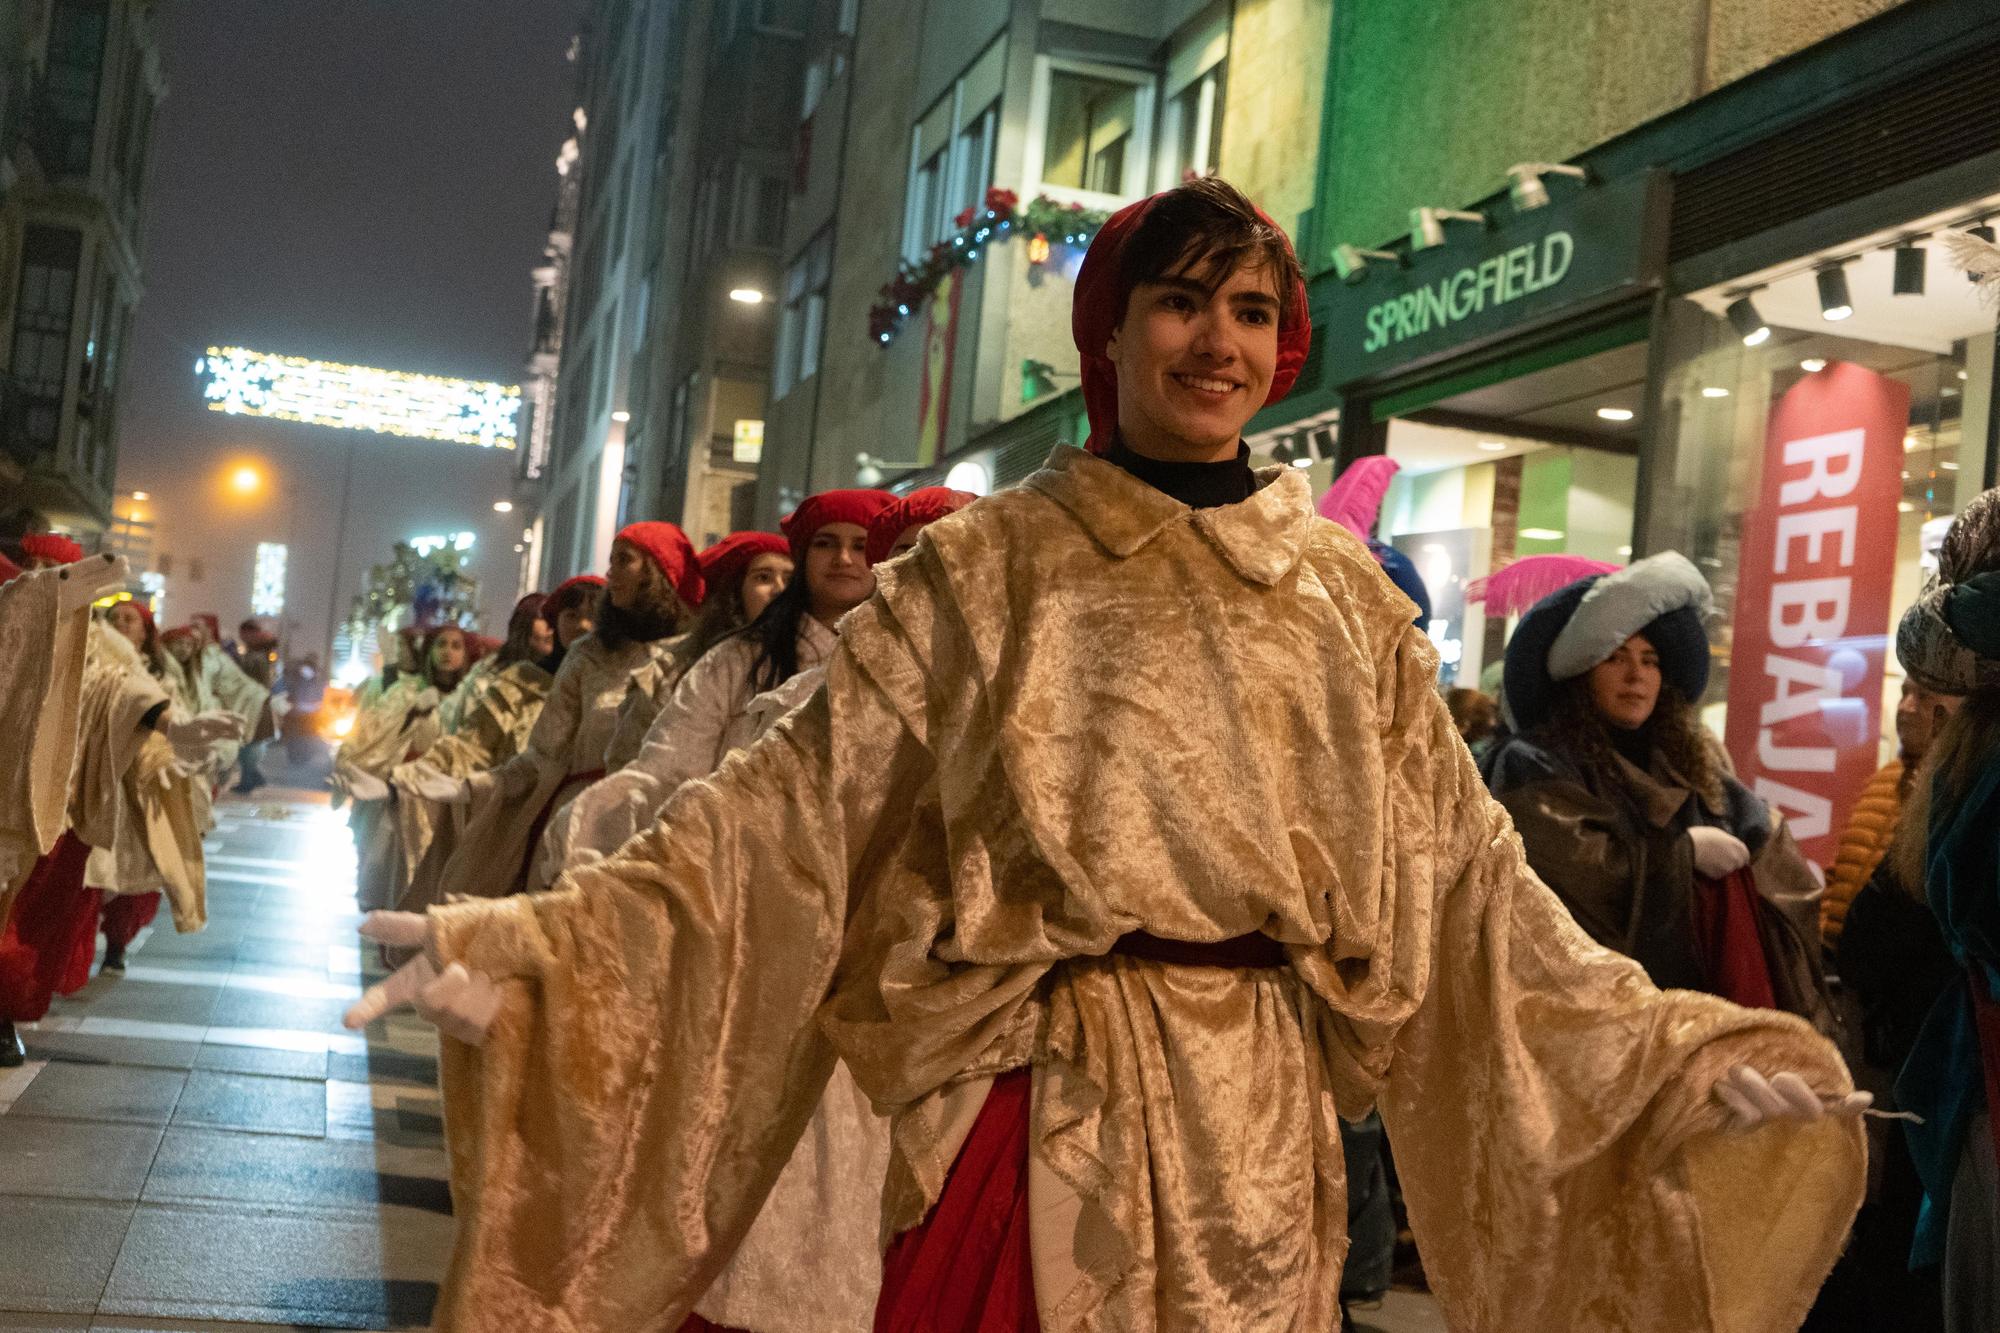 GALERÍA | Los Reyes Magos llenan de magia e ilusión las calles de Zamora